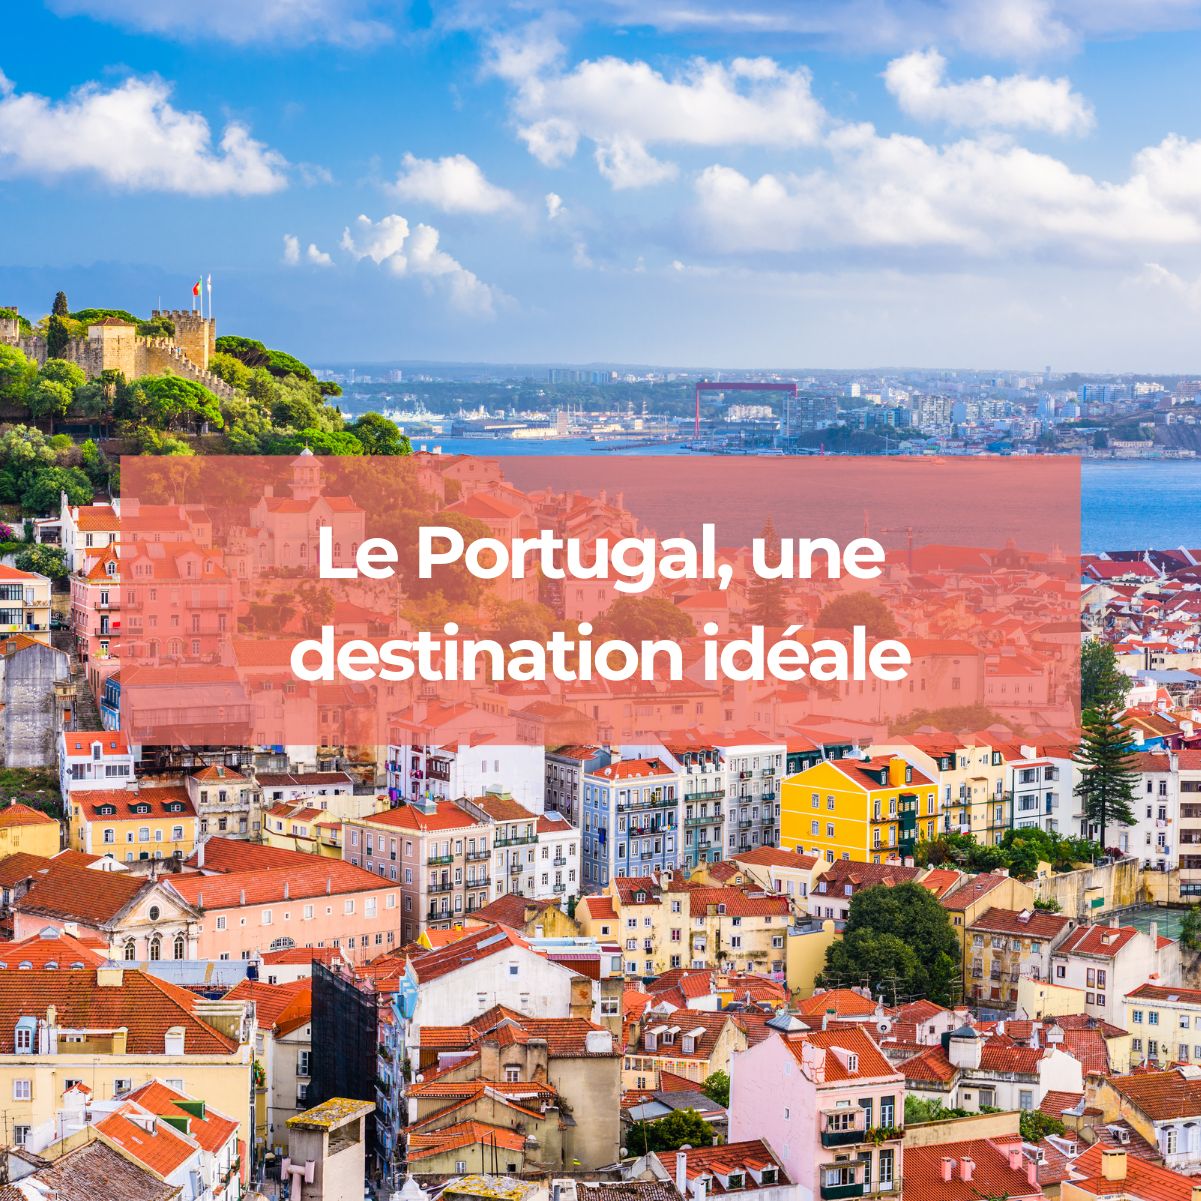 Le Portugal Destination Idéale Pour